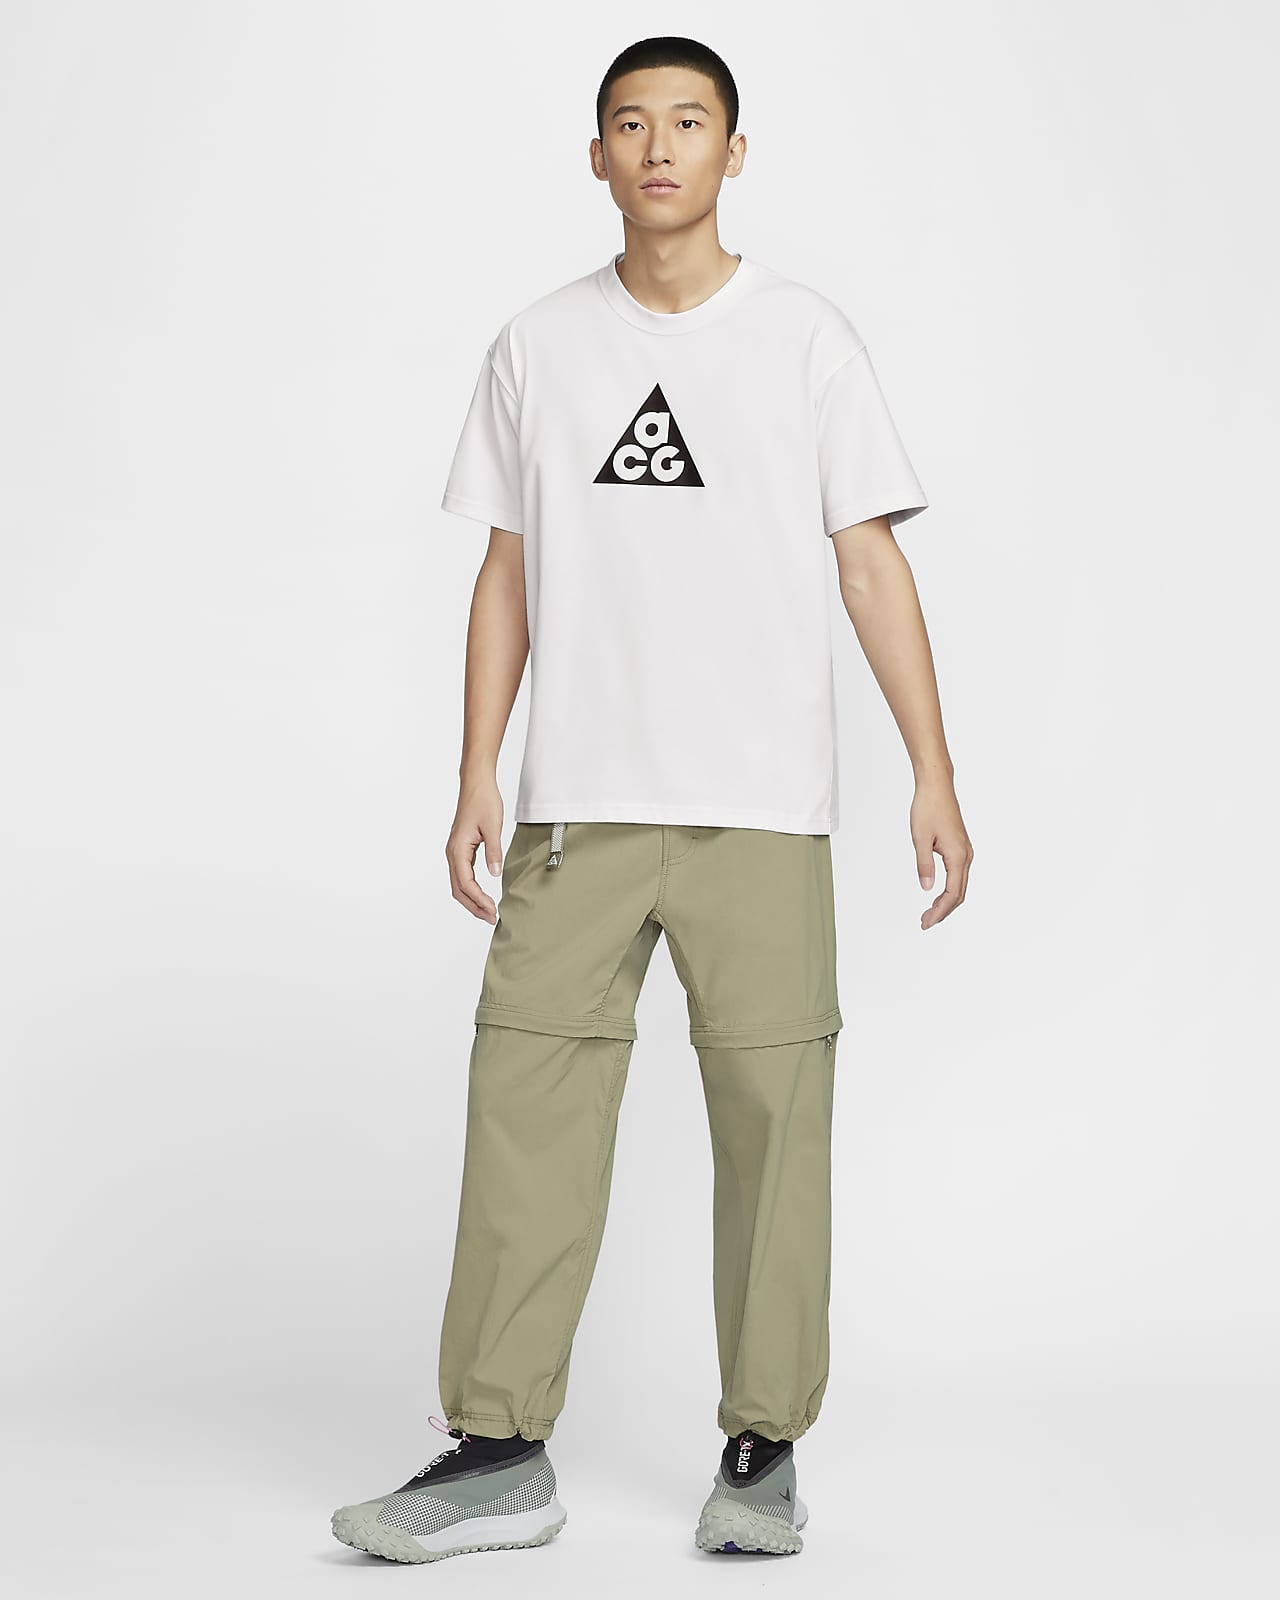 NIKE公式】ナイキ ACG メンズ Dri-FIT Tシャツ.オンラインストア (通販サイト)